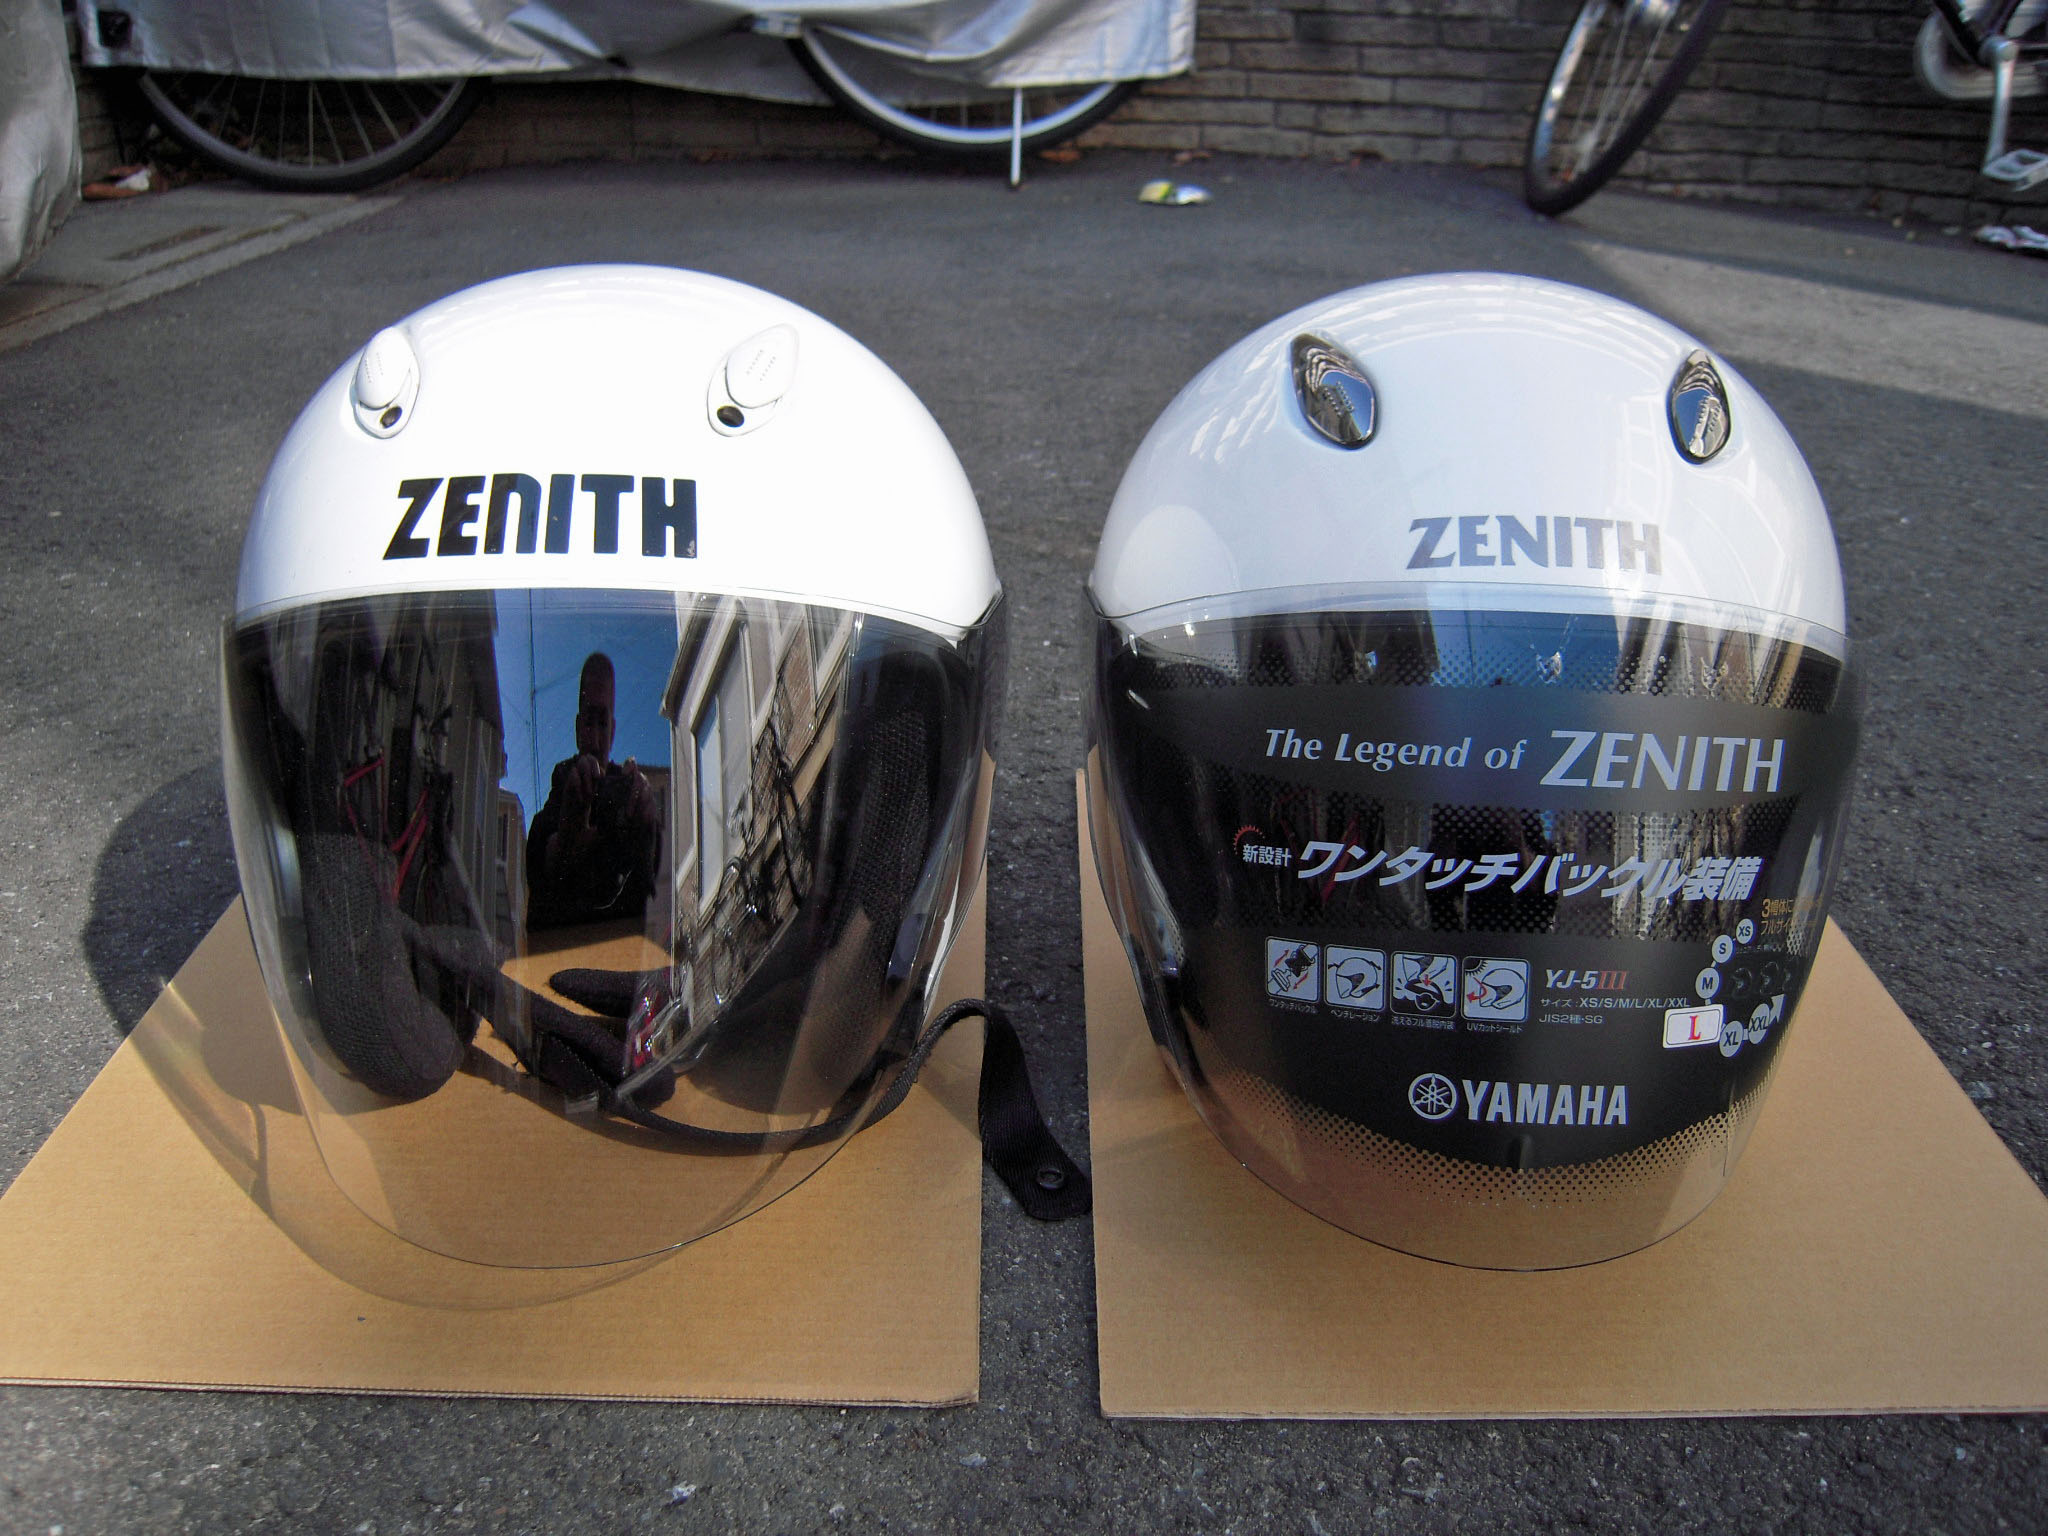 ヤマハ YJ-5Ⅲ ゼニスを購入しました | 趣味の乗り物ホームページ